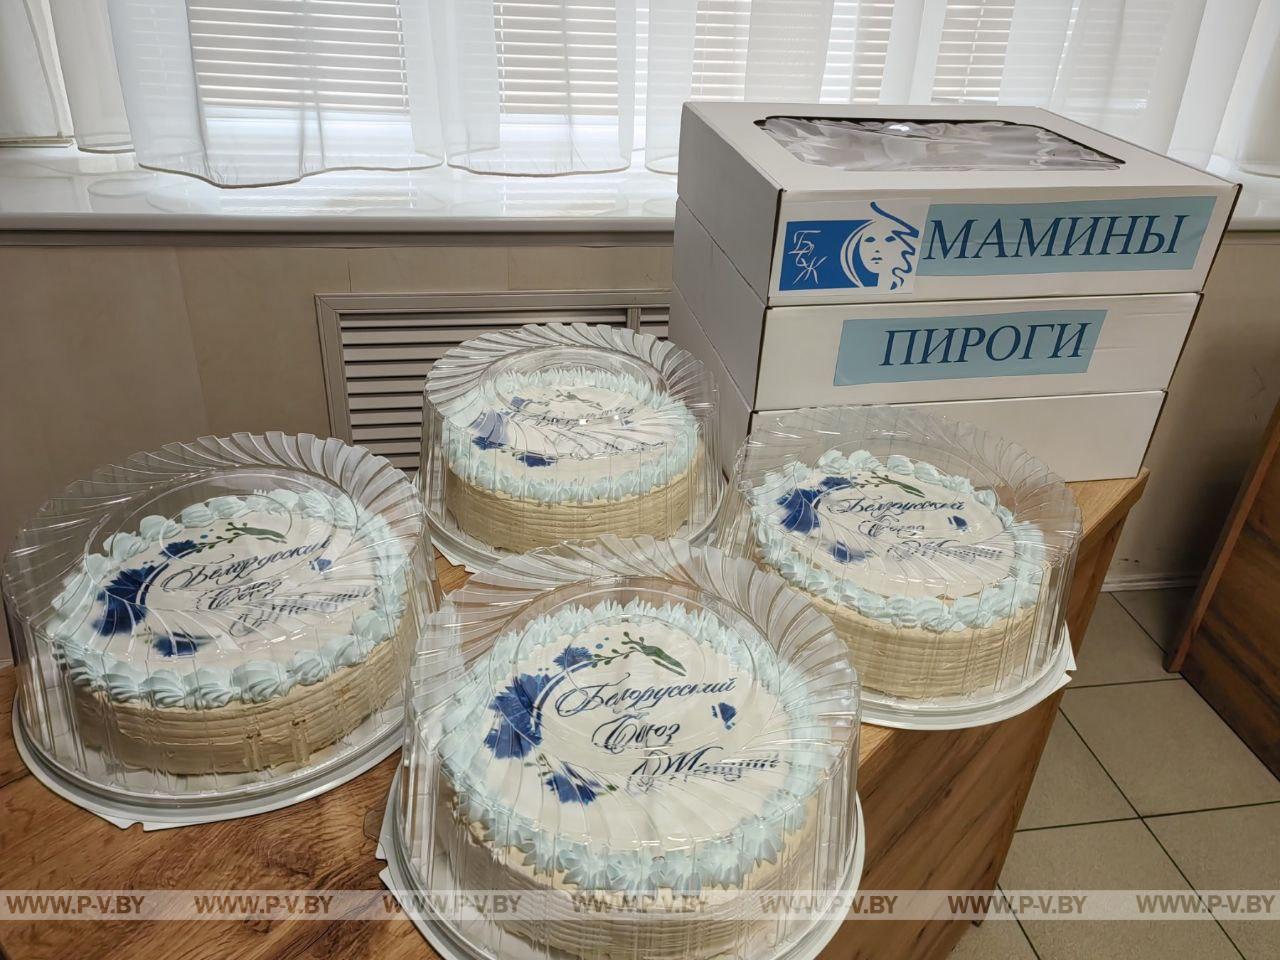 Активистки женсовета Пинского района поздравили мужчин с праздником и угостили мамиными пирогами